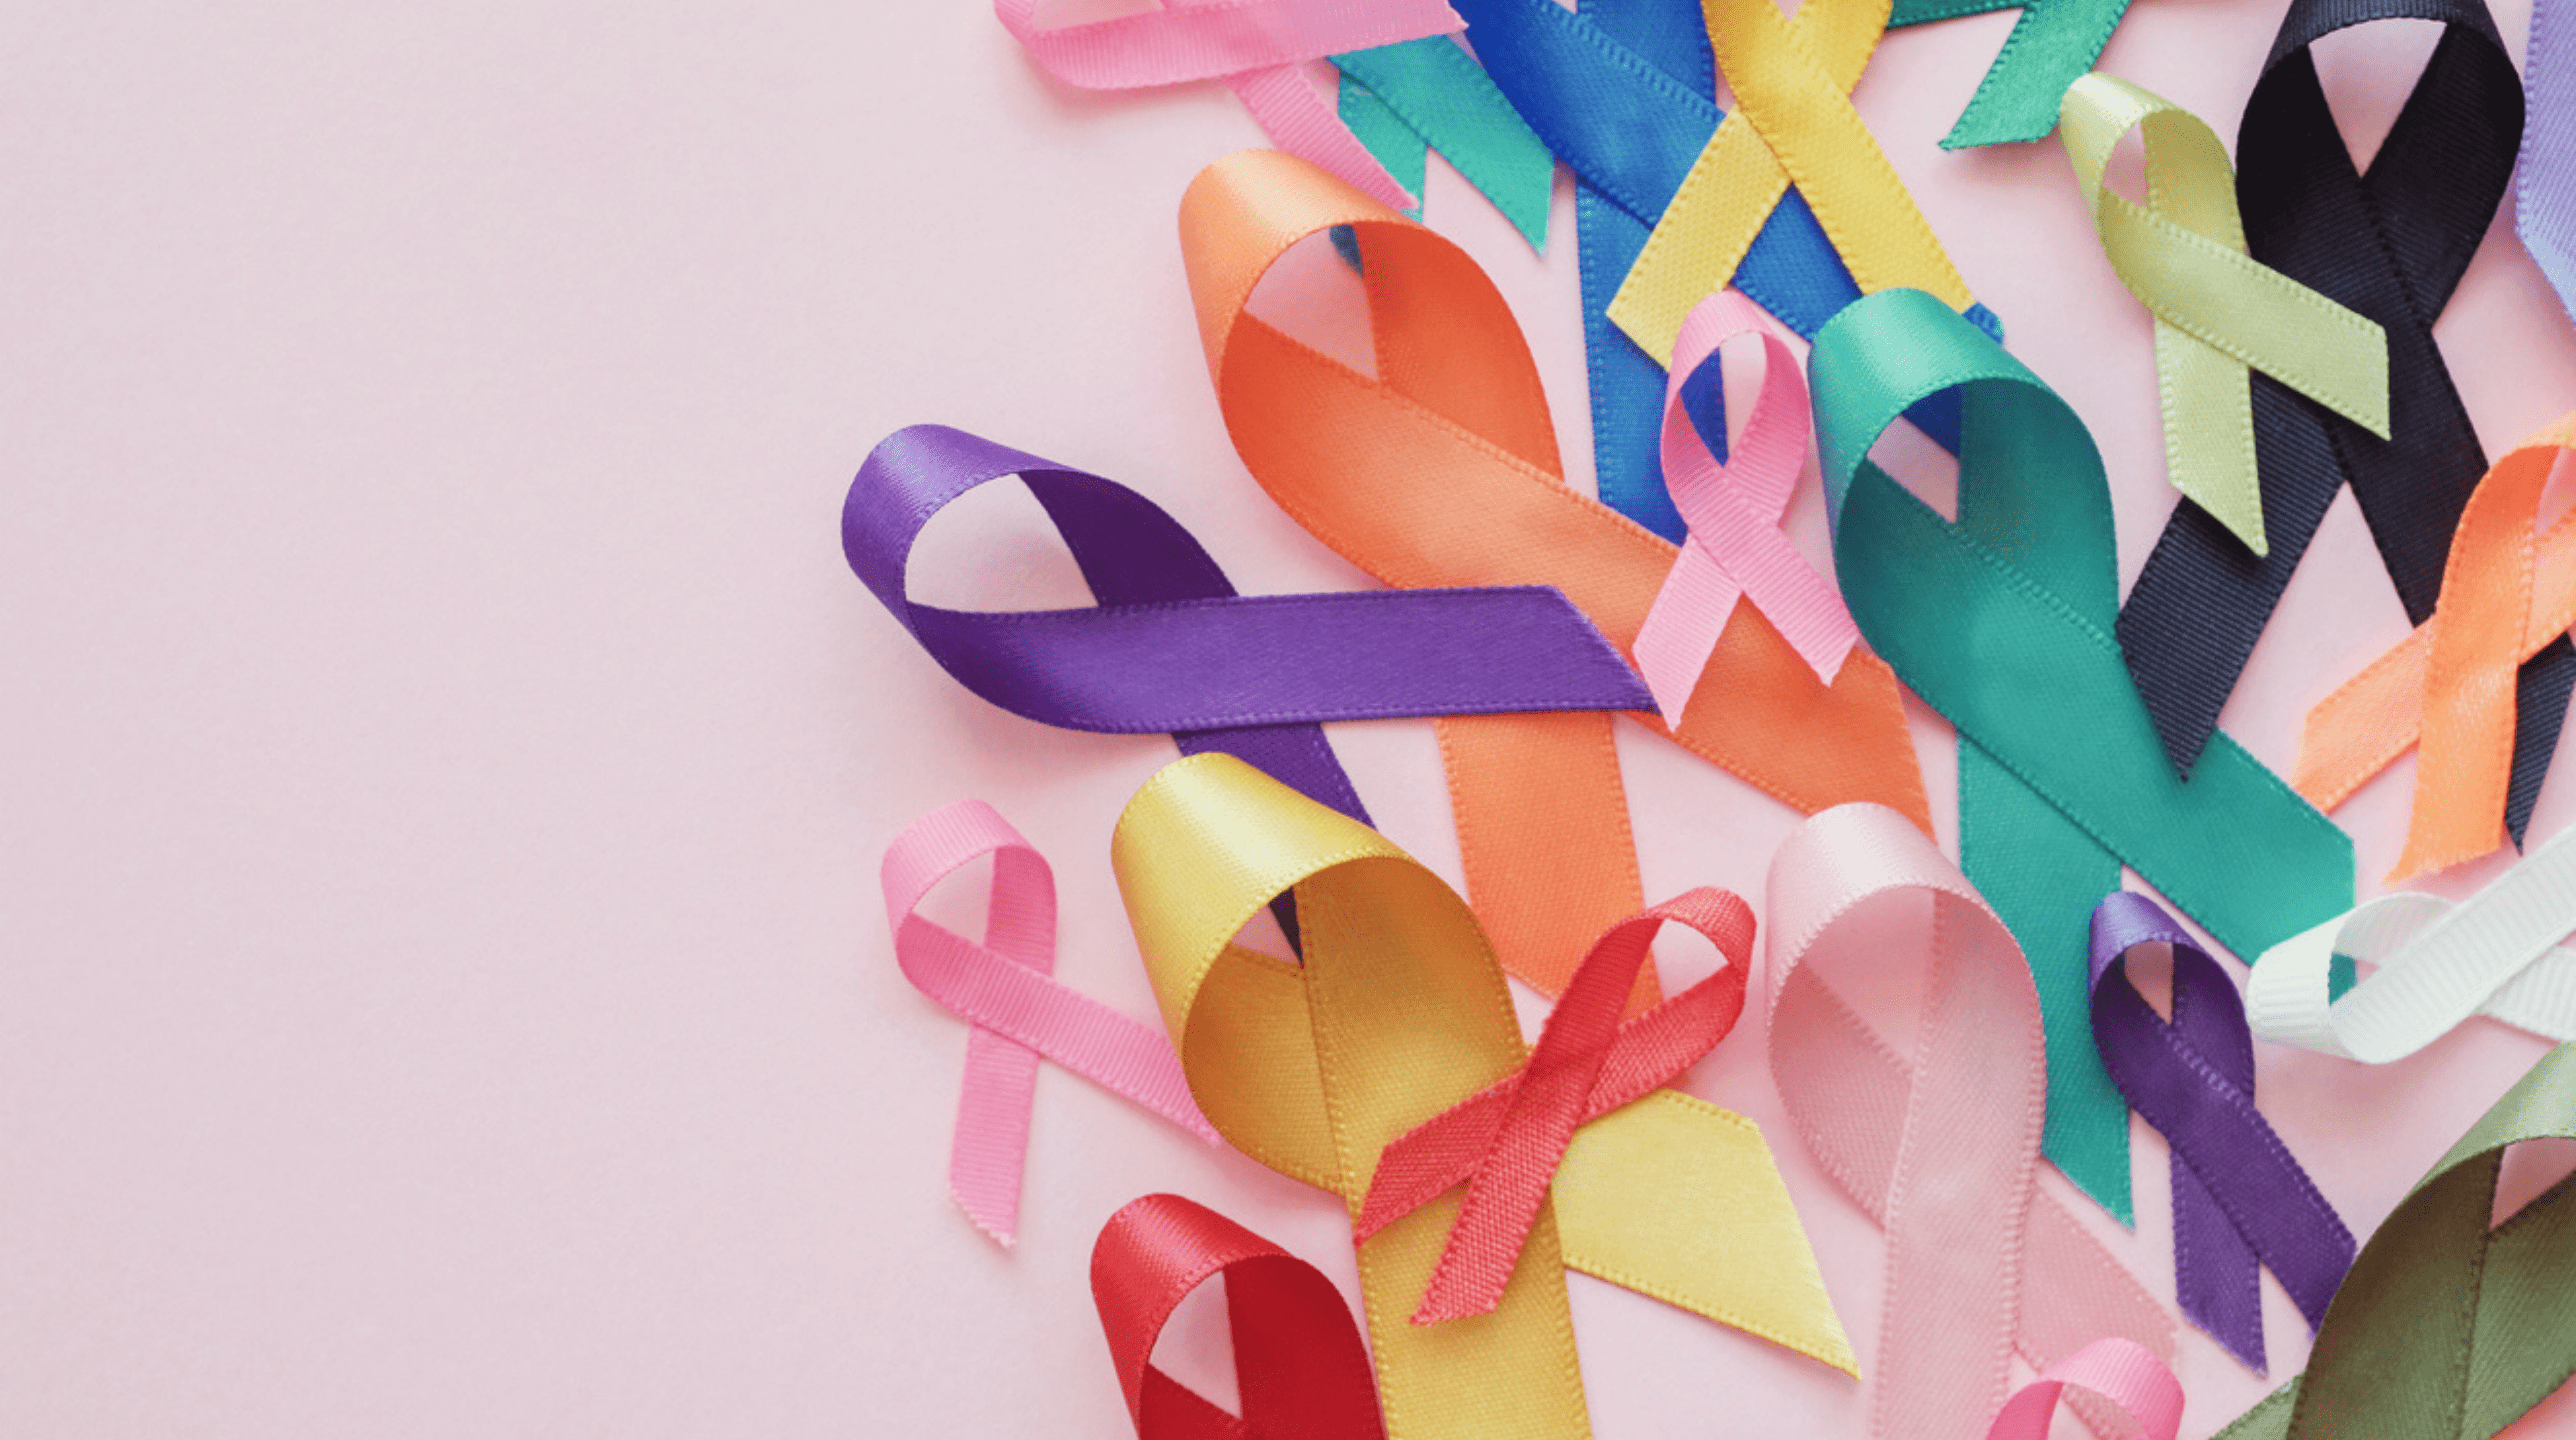 اليوم العالمي للسّرطان: معركة طويلة محفوفة بالأمل وخطوات صغيرة واثقة